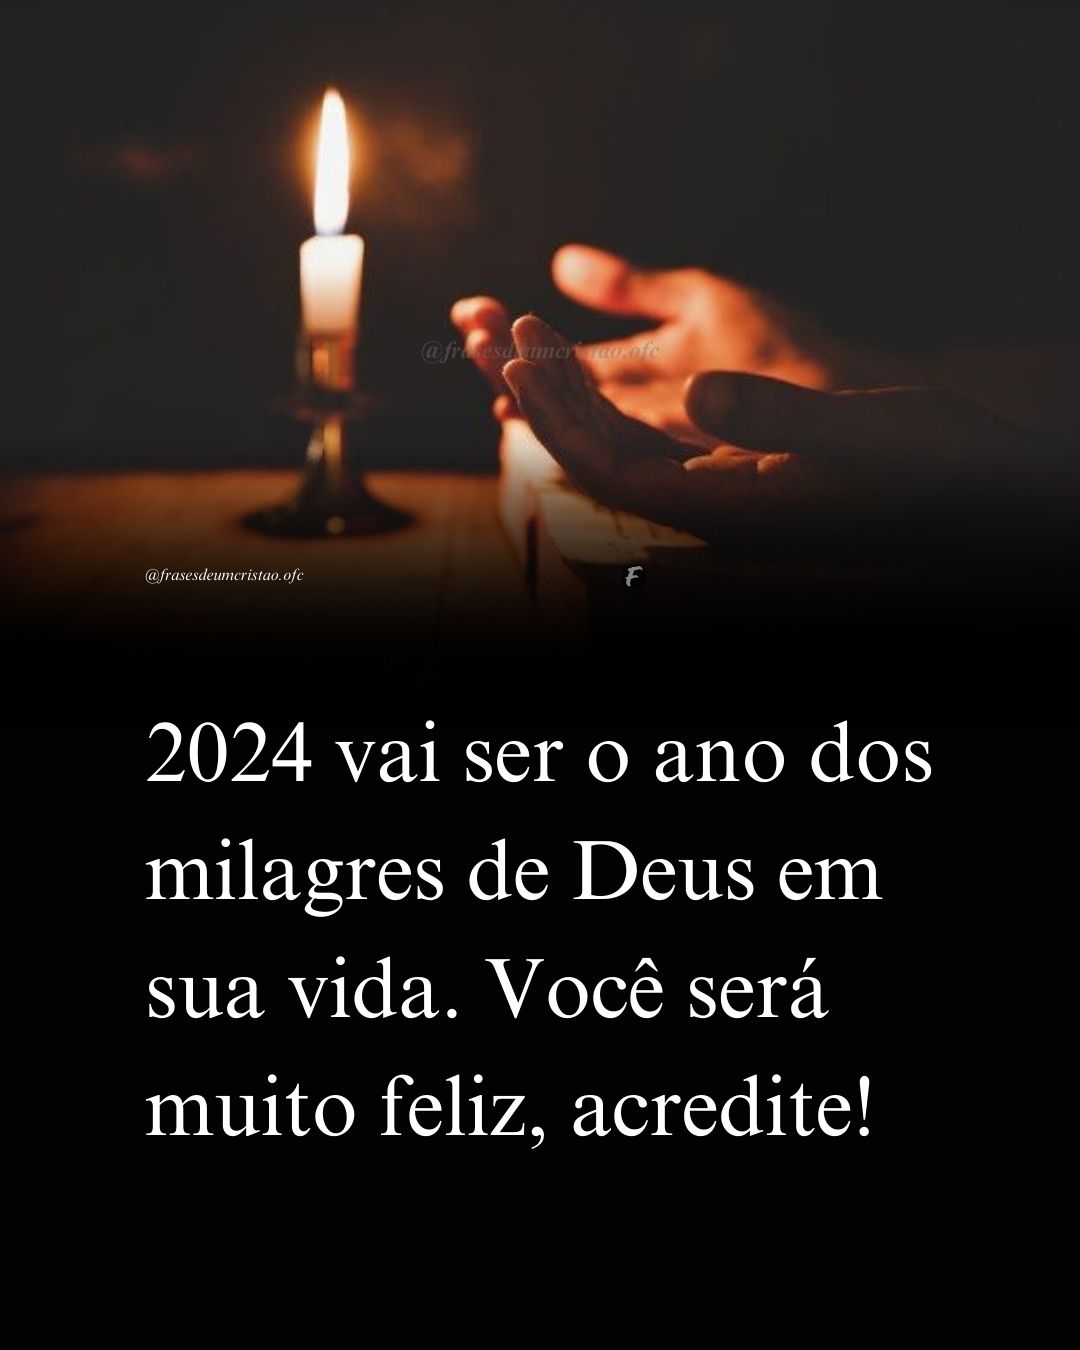 2022 vai ser o ano dos milagres de Deus em sua vida. Você será muito feliz, acredite!